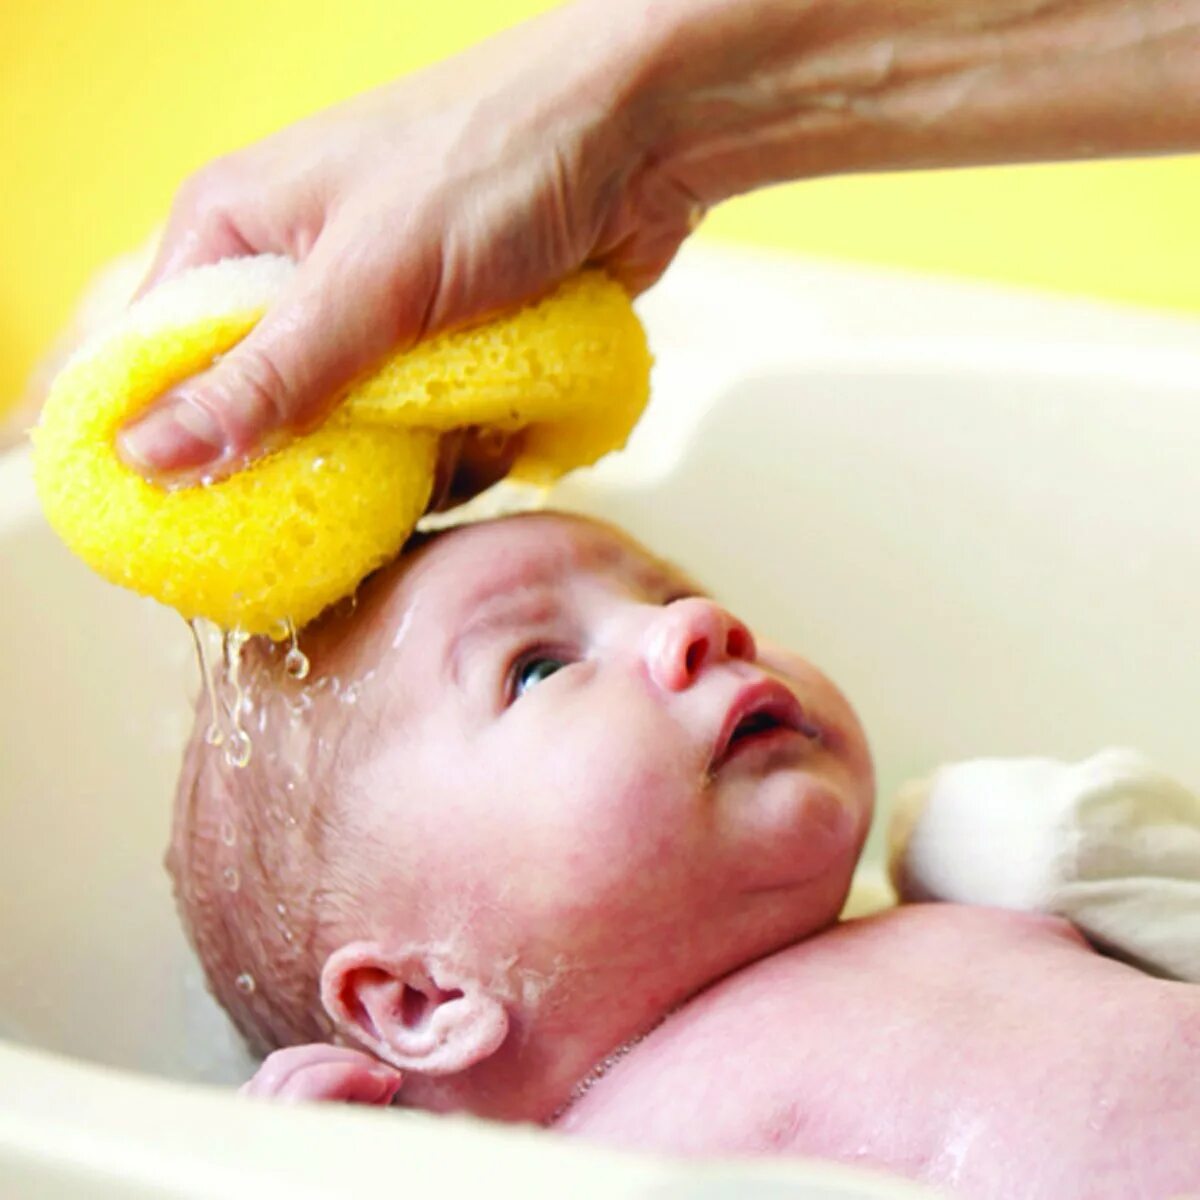 Мытье головы детям. Мытье новорожденного ребенка. Уход за кожей новорожденного. Мытье головы новорожденному ребенку.